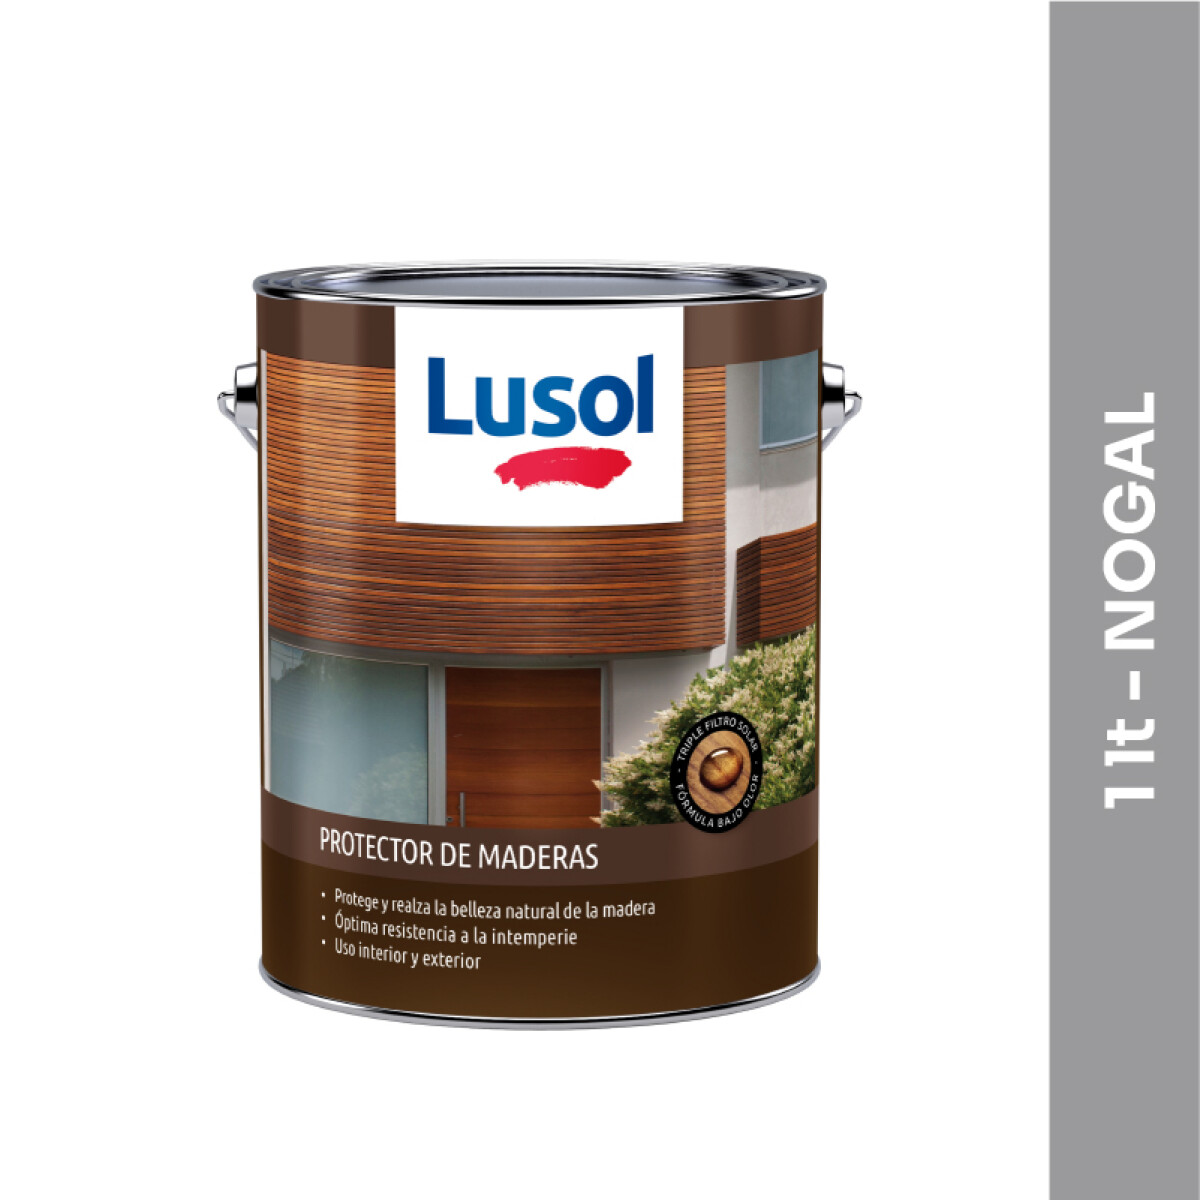 Protector de maderas Lusol - 1 lt - Nogal 